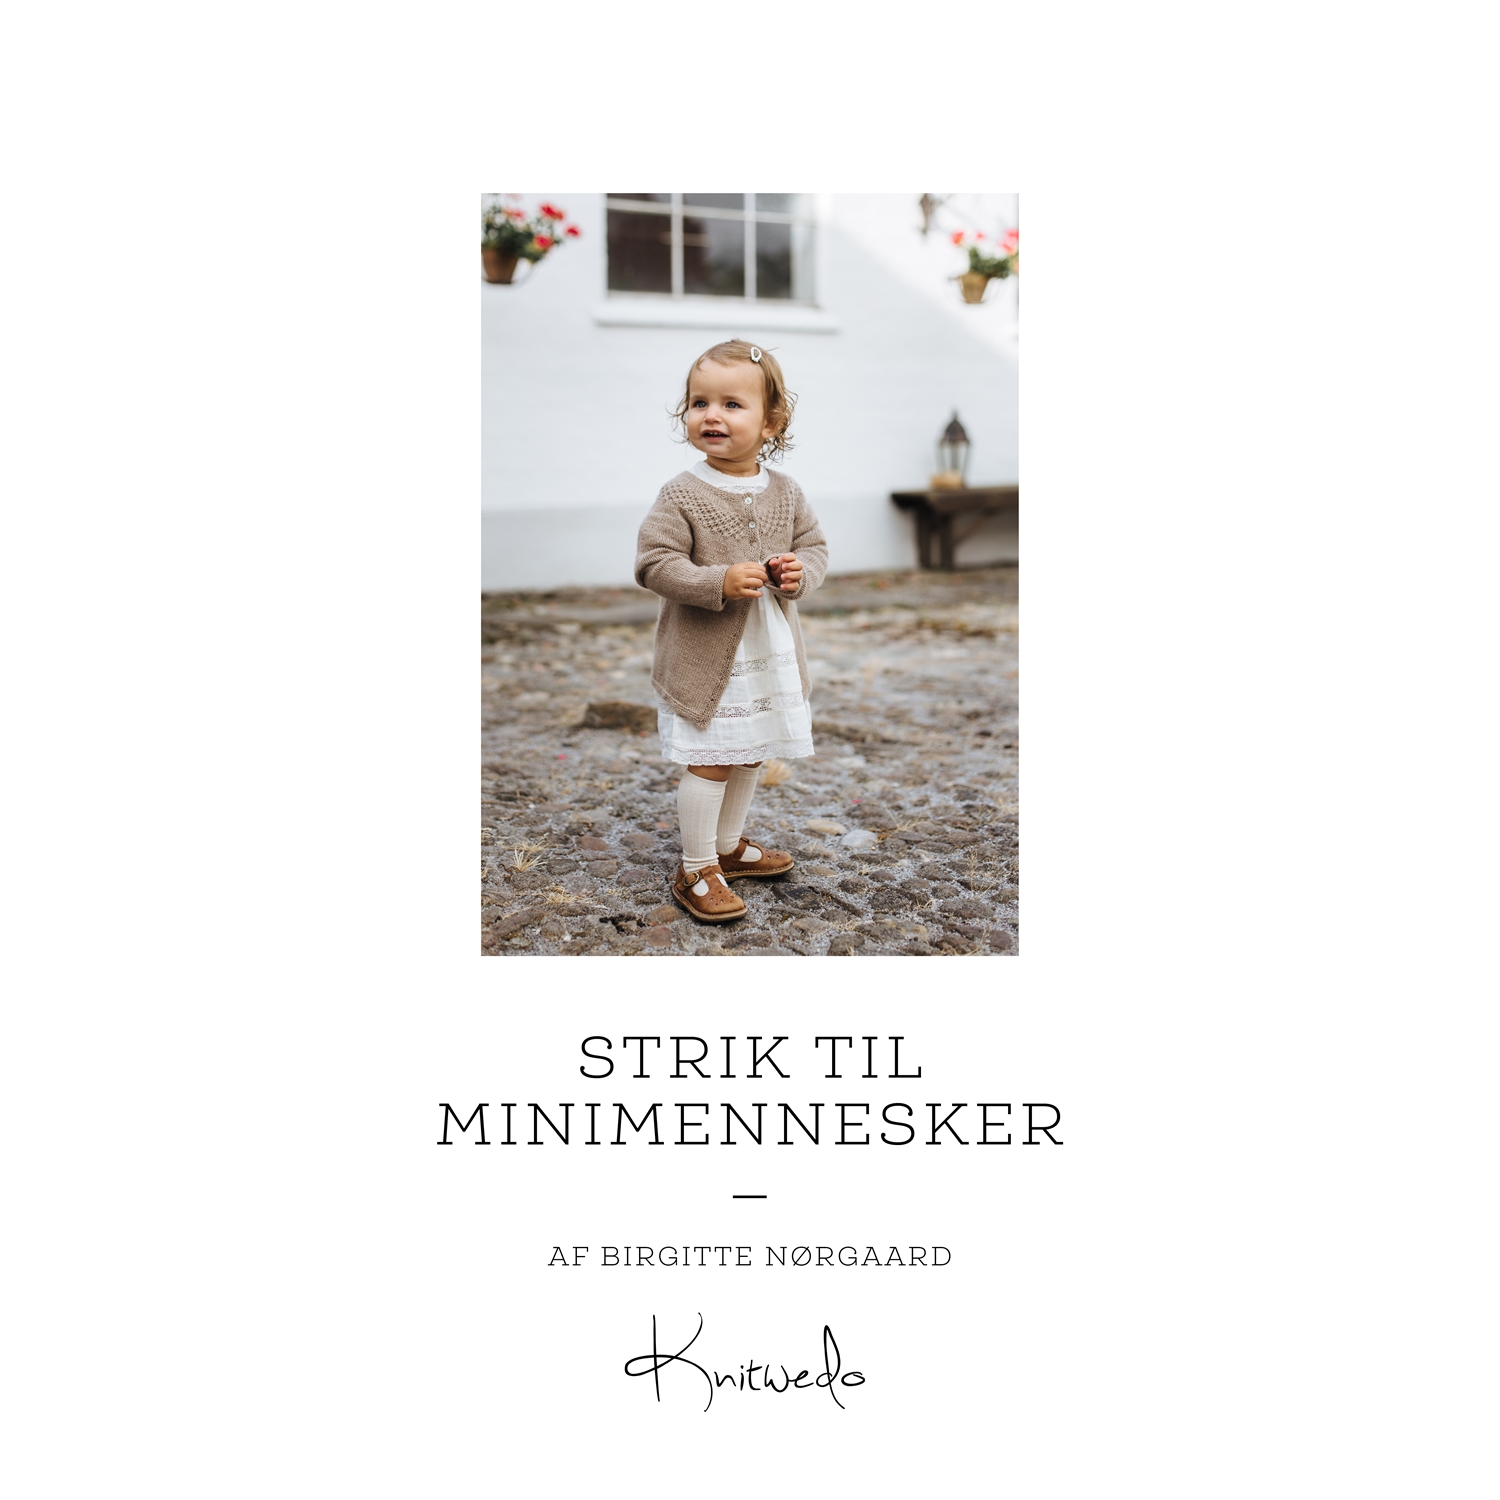 STRIK TIL MINIMENNESKER Køb bogen online GLIENKE DESIGN!